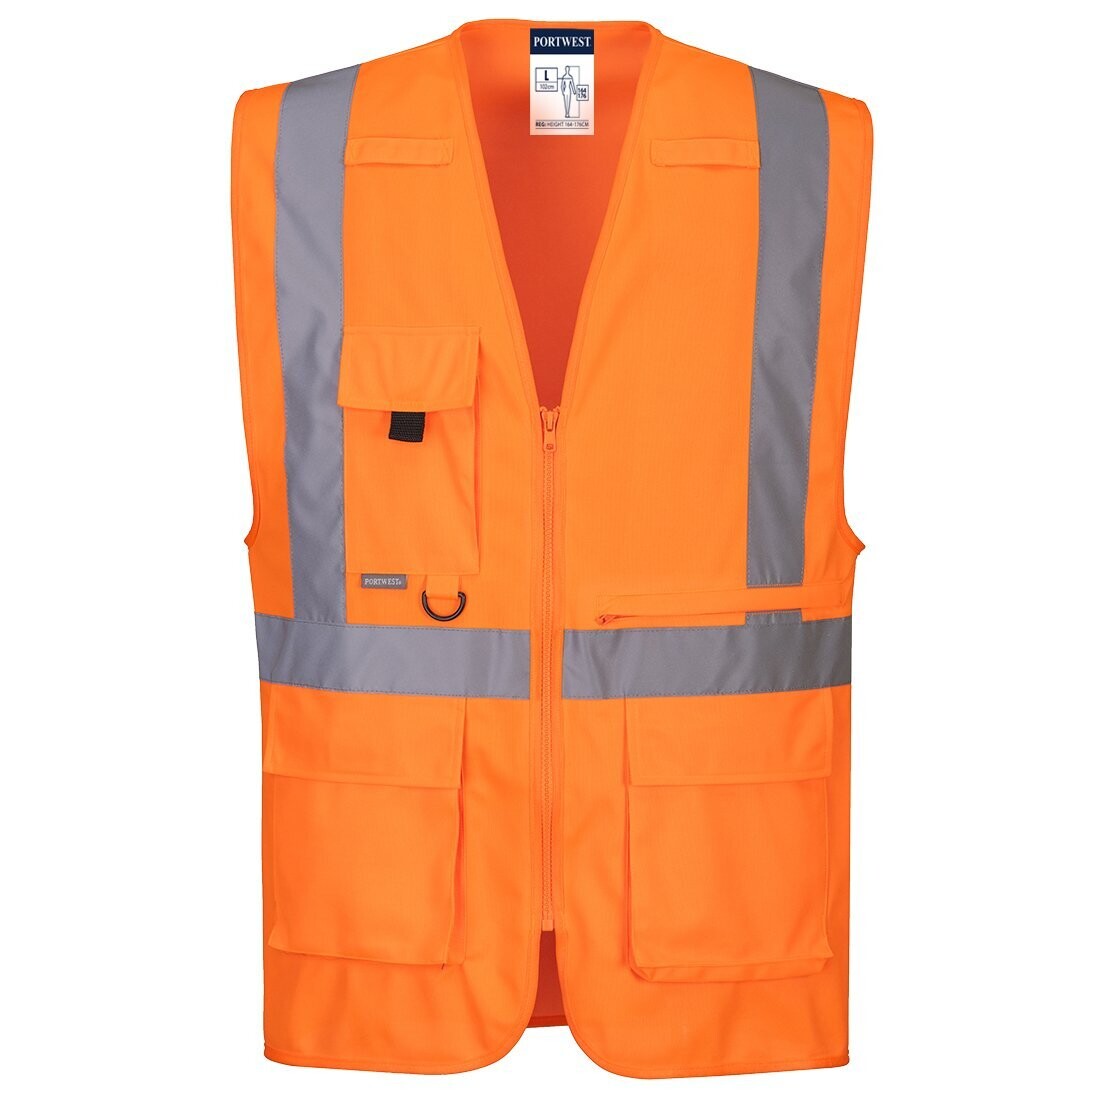 Gilet Executive haute visibilité avec poche pour tablette, Couleur: orange